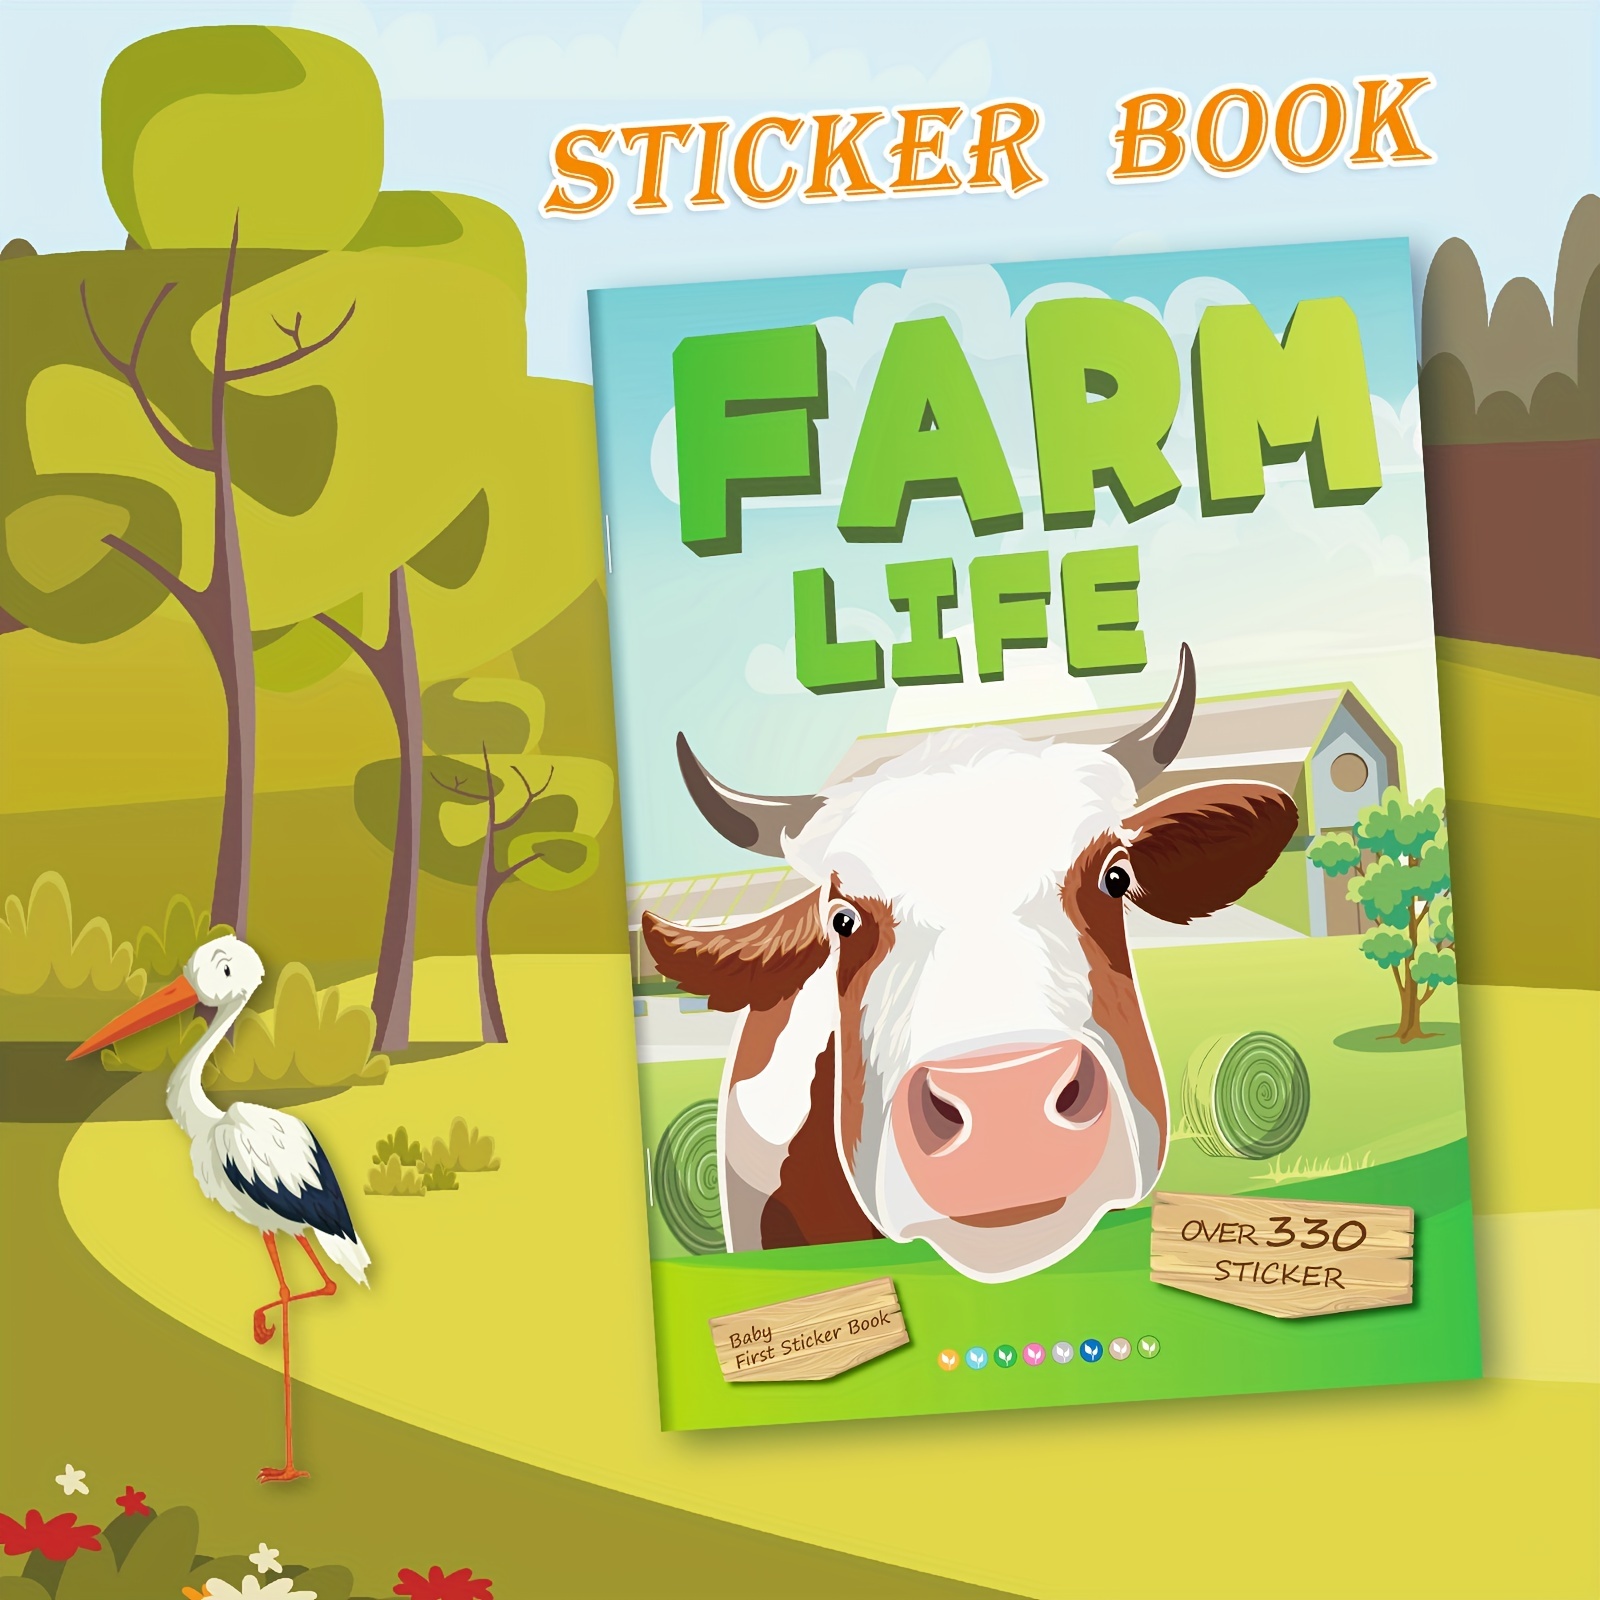 3 Sets Portable Jelly Sticker Book, Reusable Ocean Farm Animal